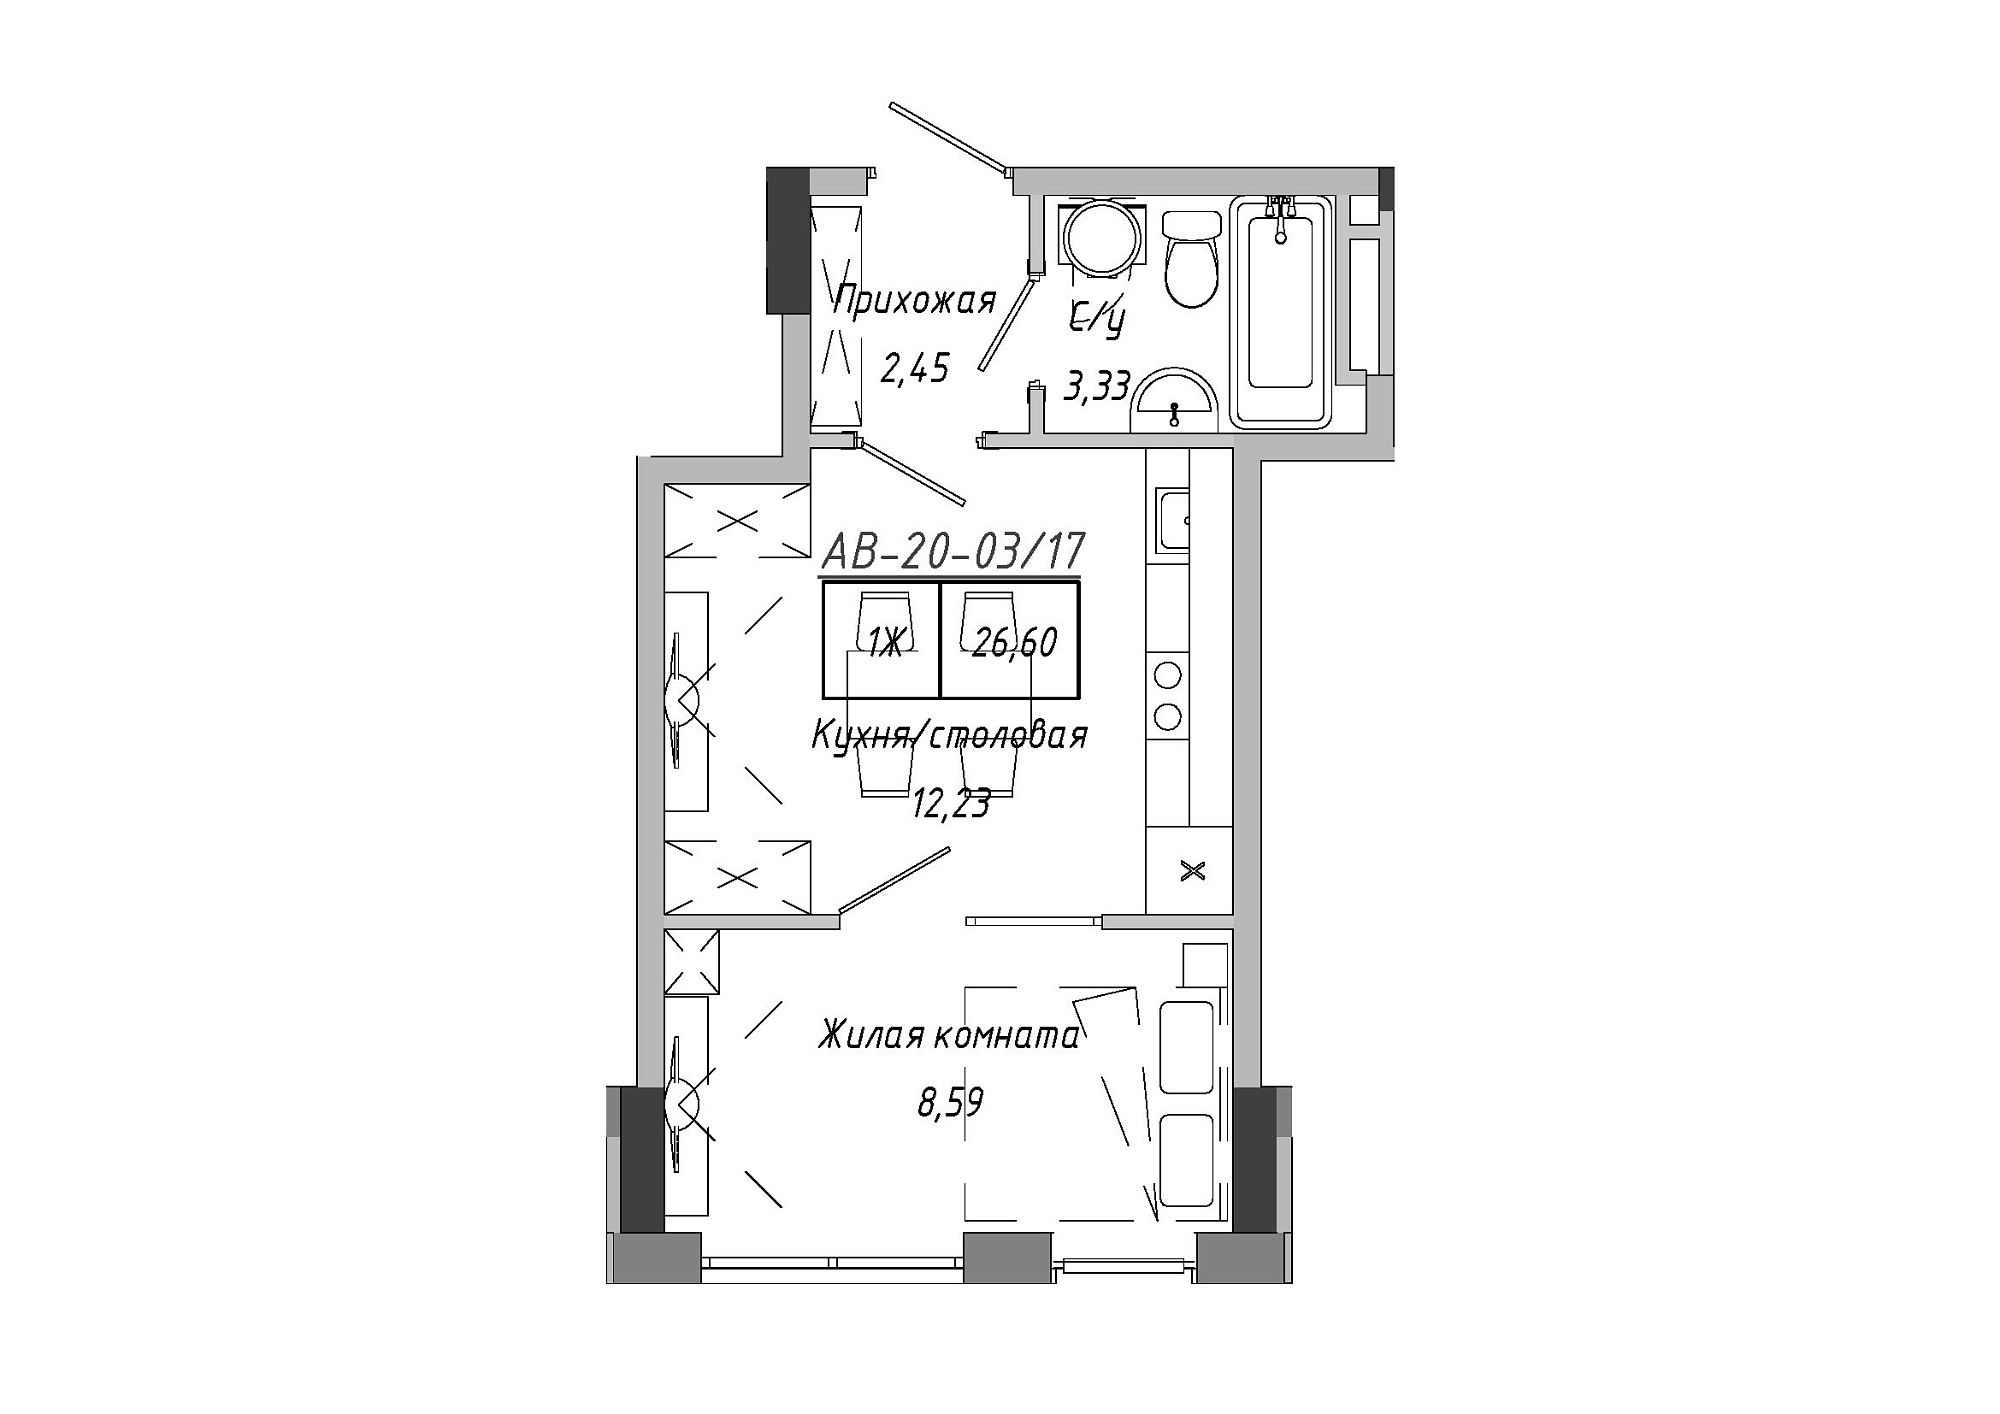 Планировка 1-к квартира площей 26.6м2, AB-20-03/00017.